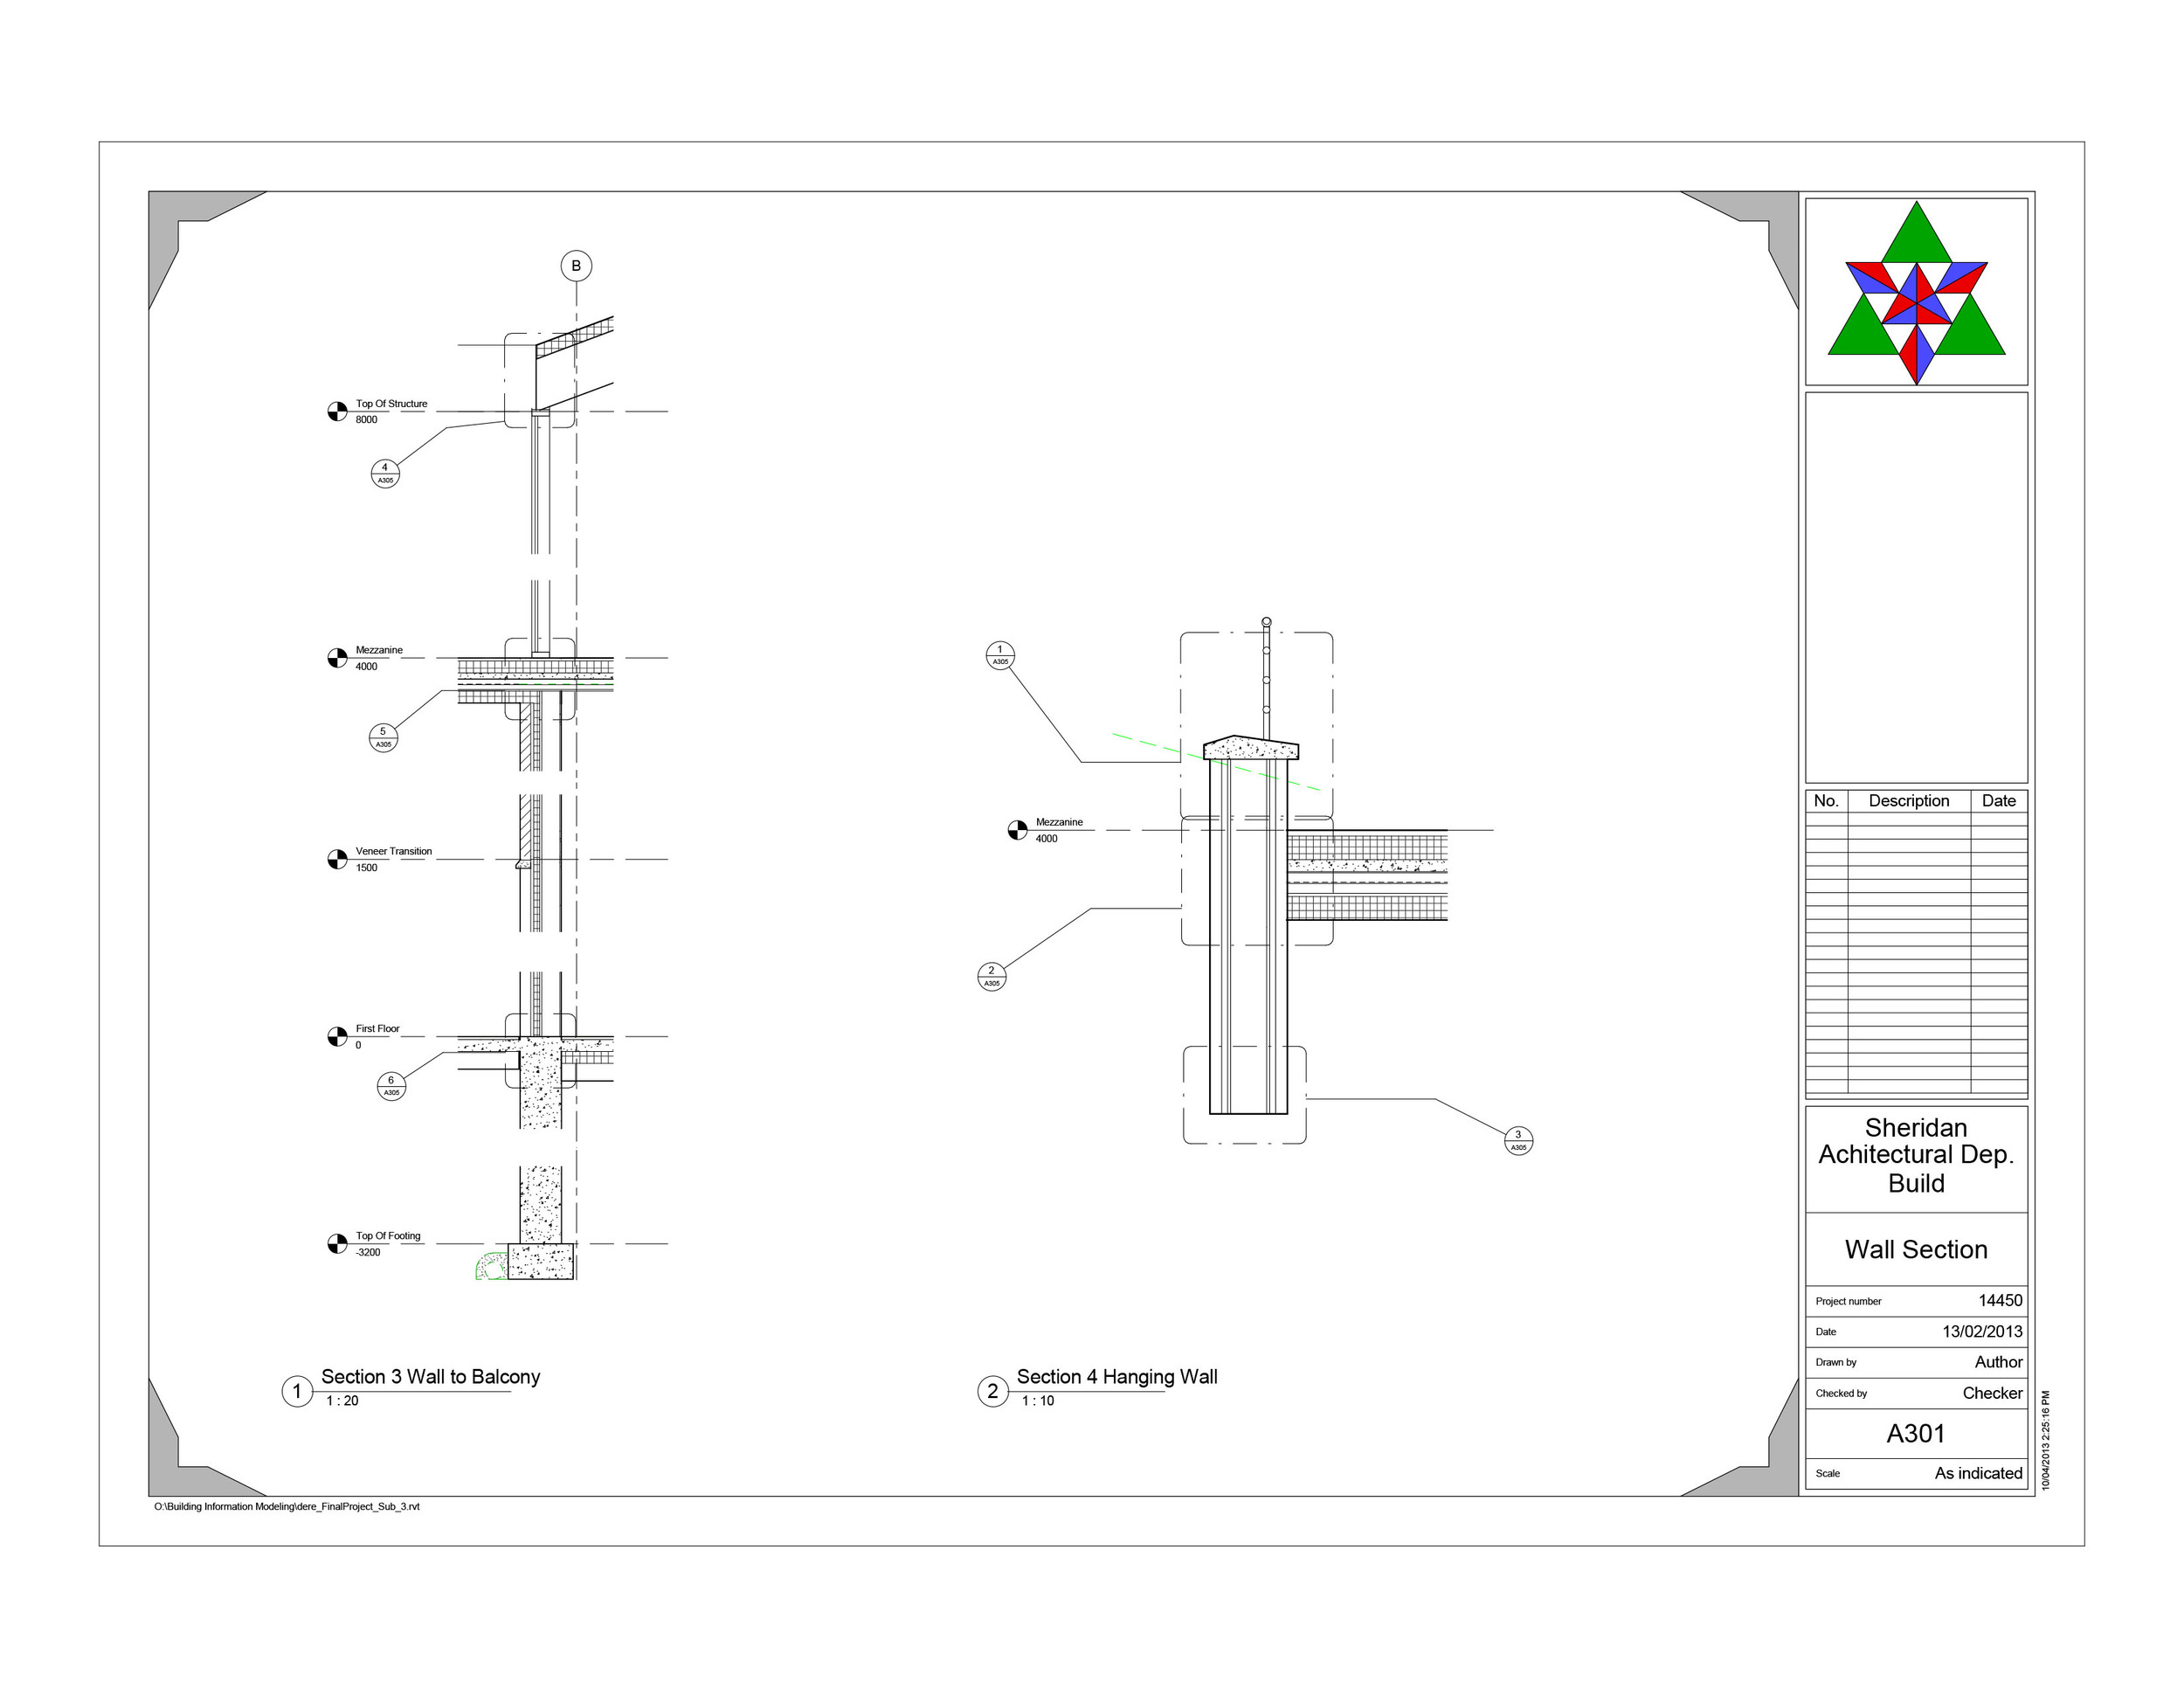 dere_FinalProject  - Sheet - A301 - Wall Section.jpg